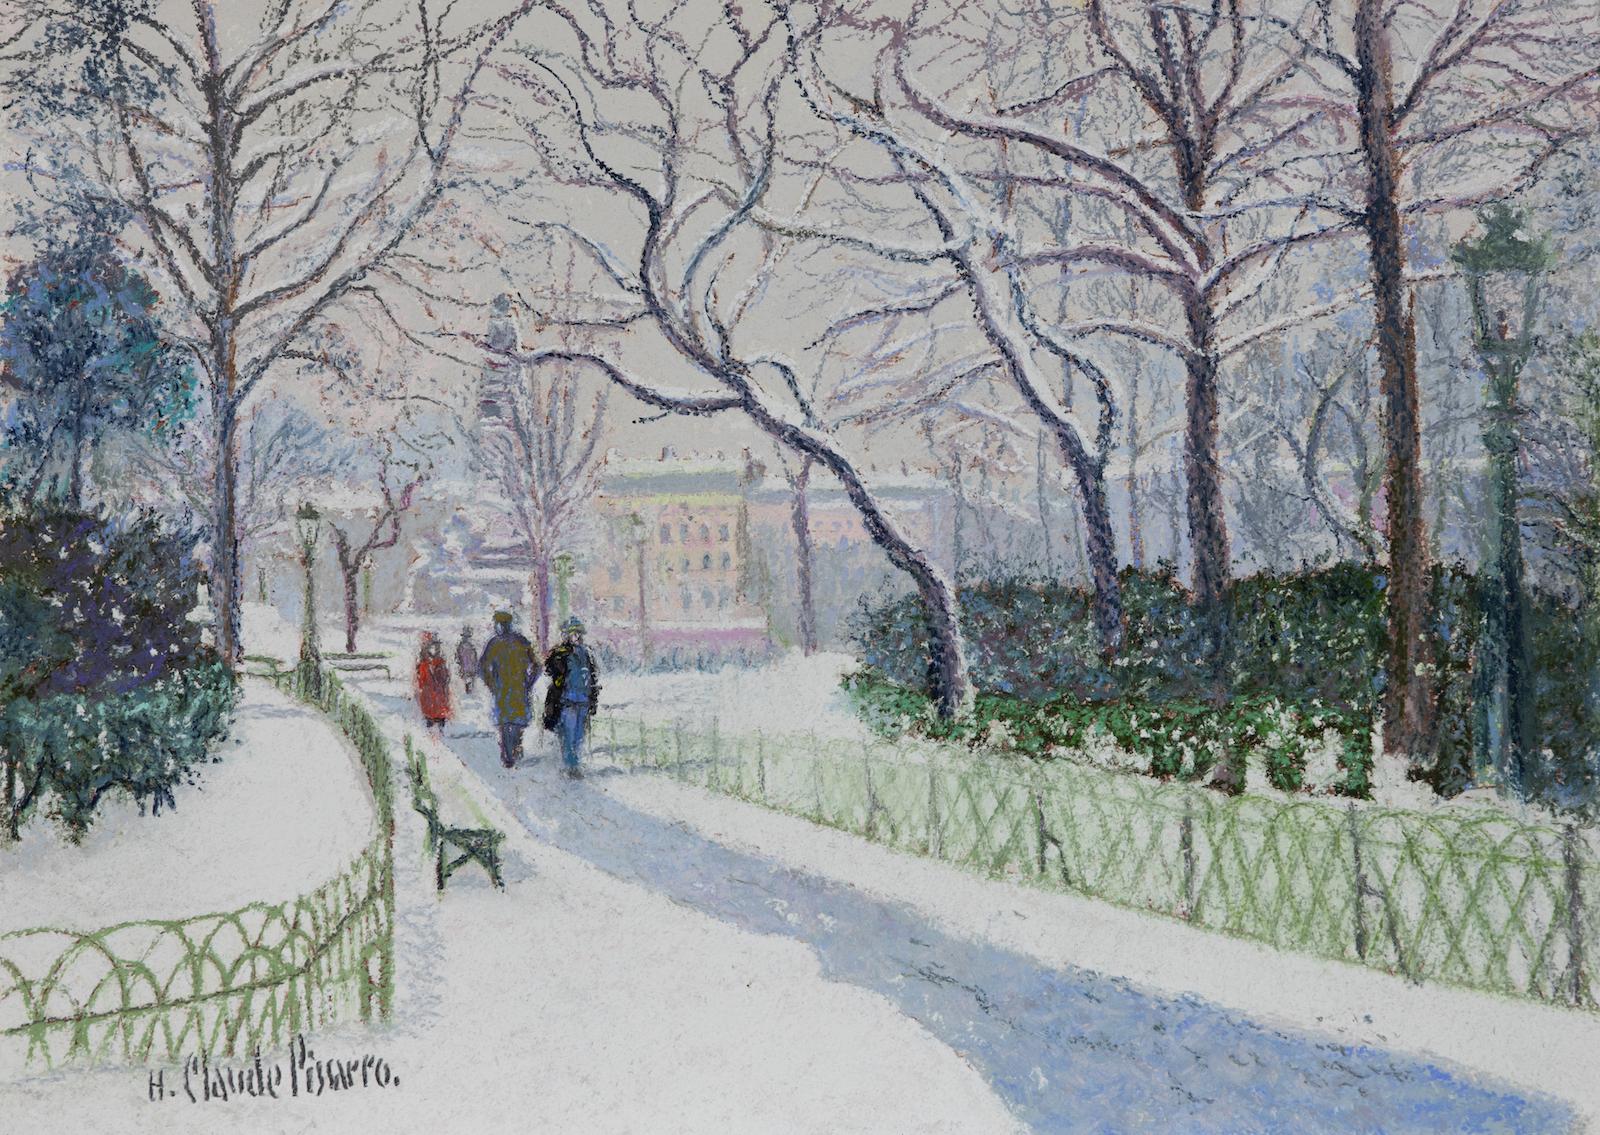 Hughes Claude Pissarro Figurative Painting - La Place Carnot Sous la Neige (Lyon) by H. Claude Pissarro - Snow scene painting